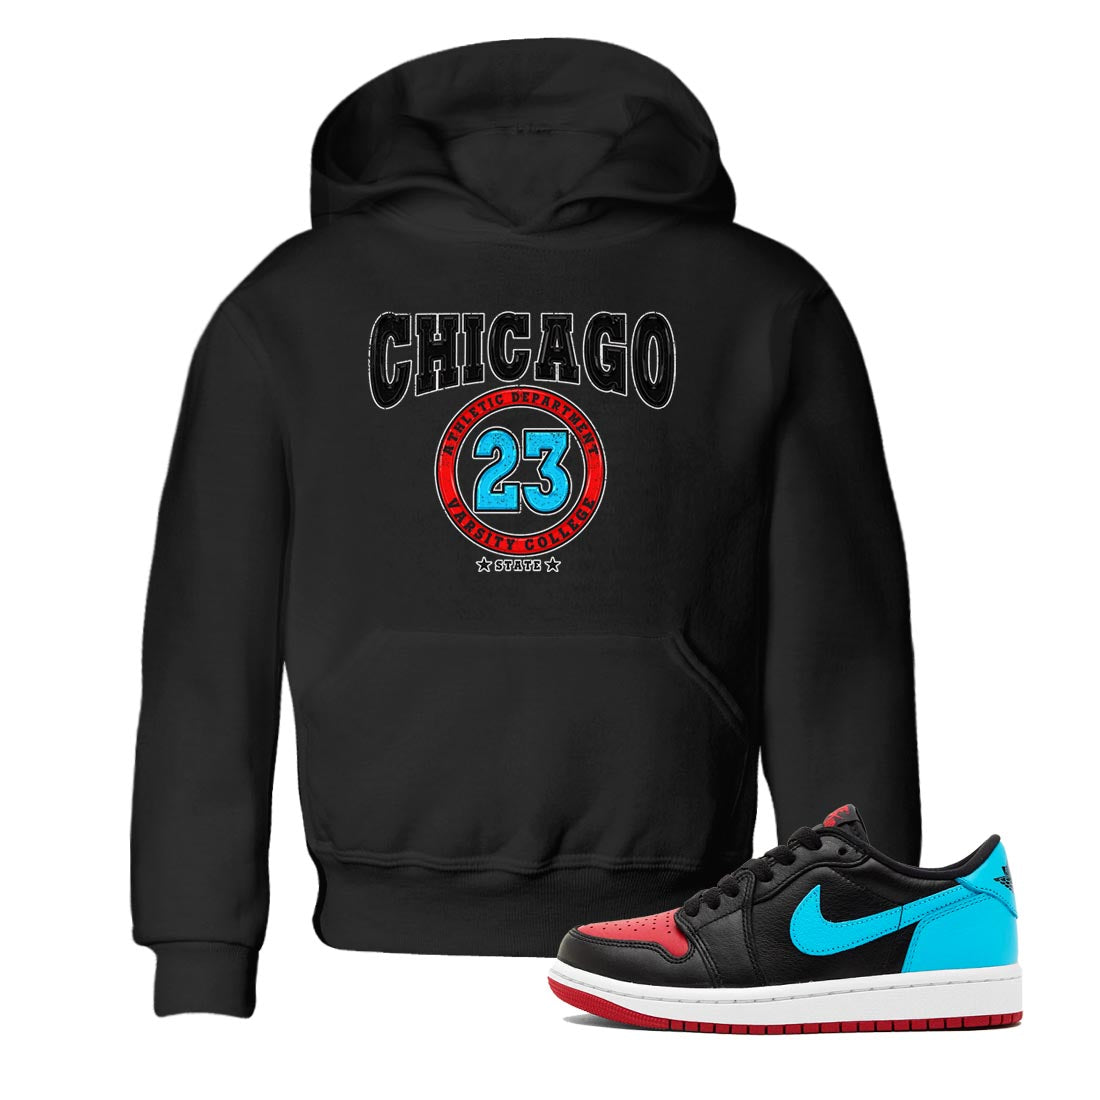 Air Jordan 1 Low UNC to Chicago shirt to match jordans Varsity Streetwear Sneaker Shirt Air Jordan 1 UNC to Chicago Drip Gear Zone Sneaker Matching Clothing Baby Toddler Black 1 T-Shirt